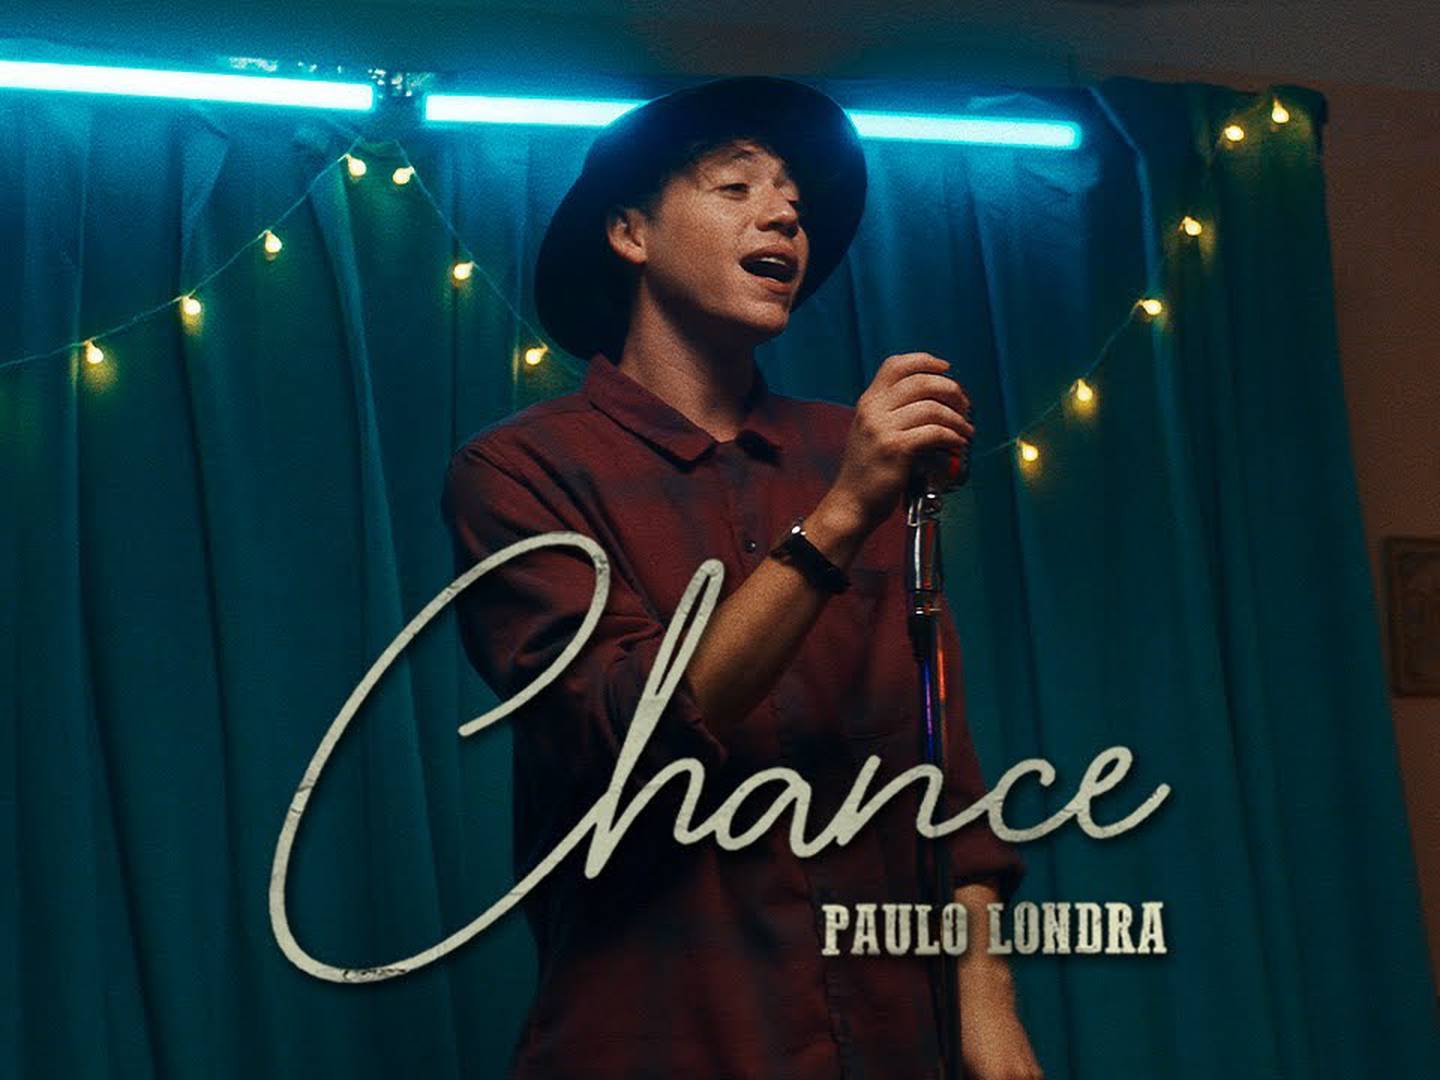 Paulo Londra estrena canción y video musical para 'Chance' (Letra y  significado)